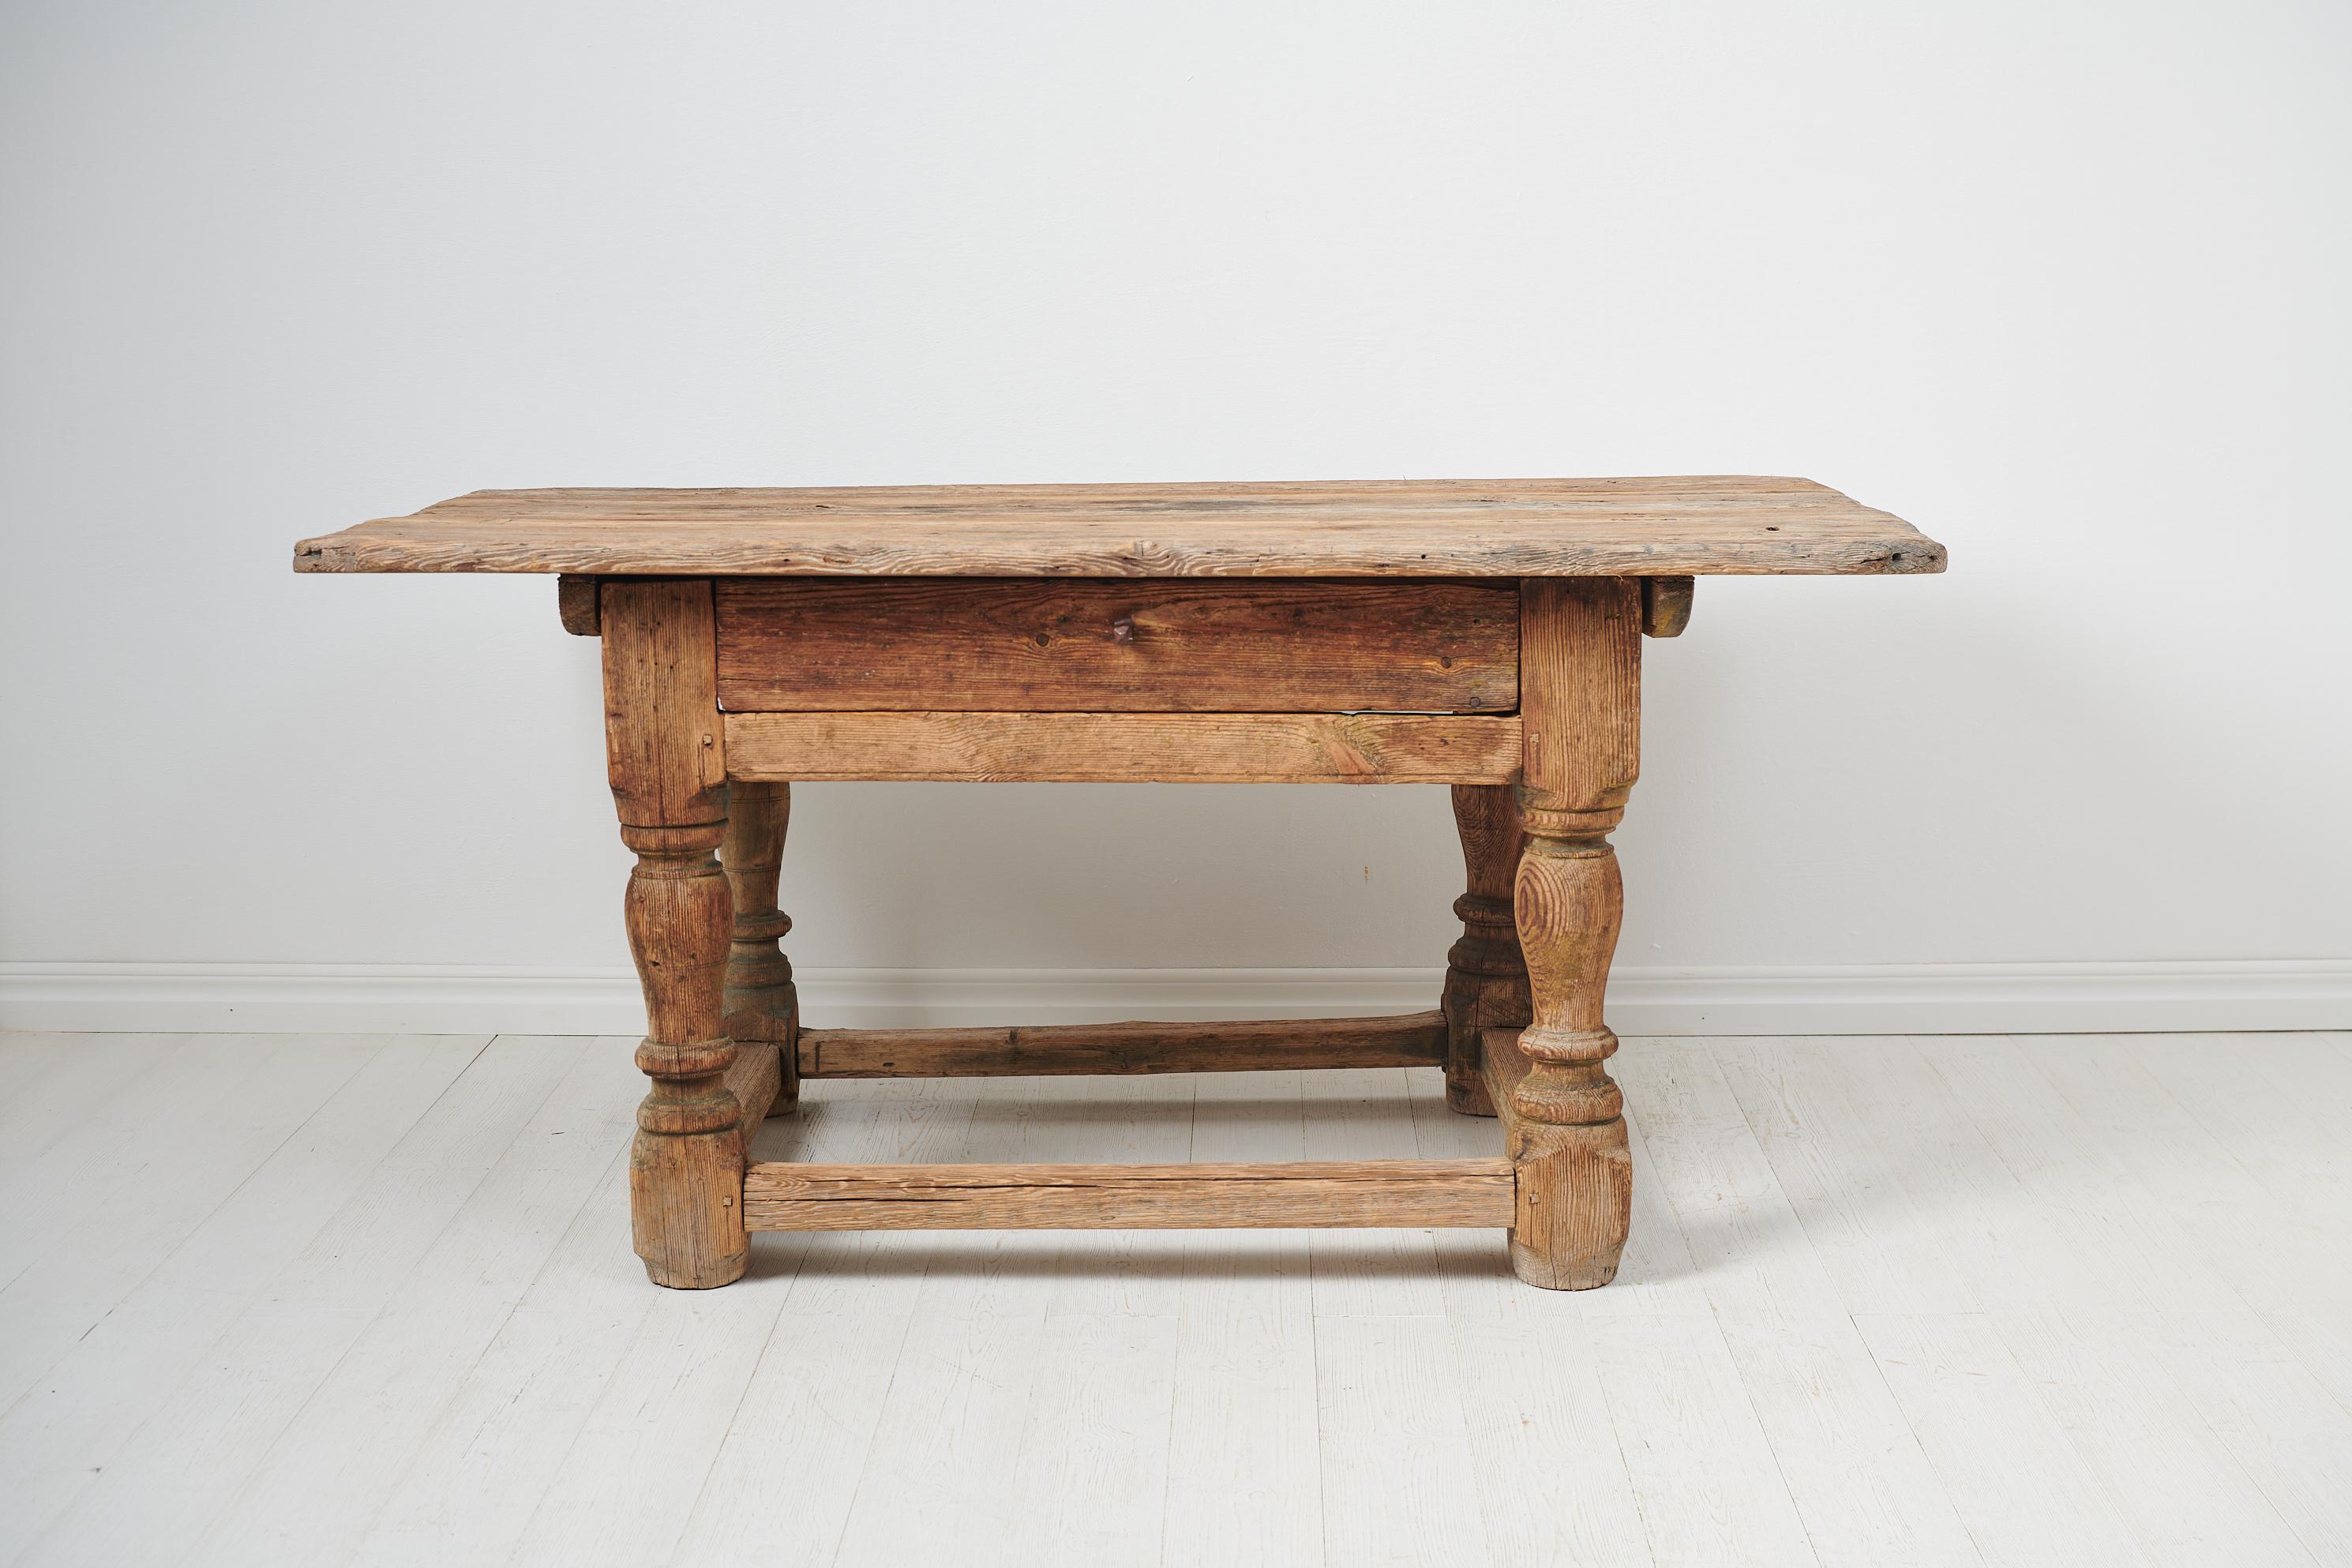 Table baroque suédoise unique fabriquée à la main au milieu des années 1700. La table est un exemple très rare de mobilier suédois ancien. Son cadre est en pin et ses pieds sont lourds et solides. La table présente une patine fantastique car la